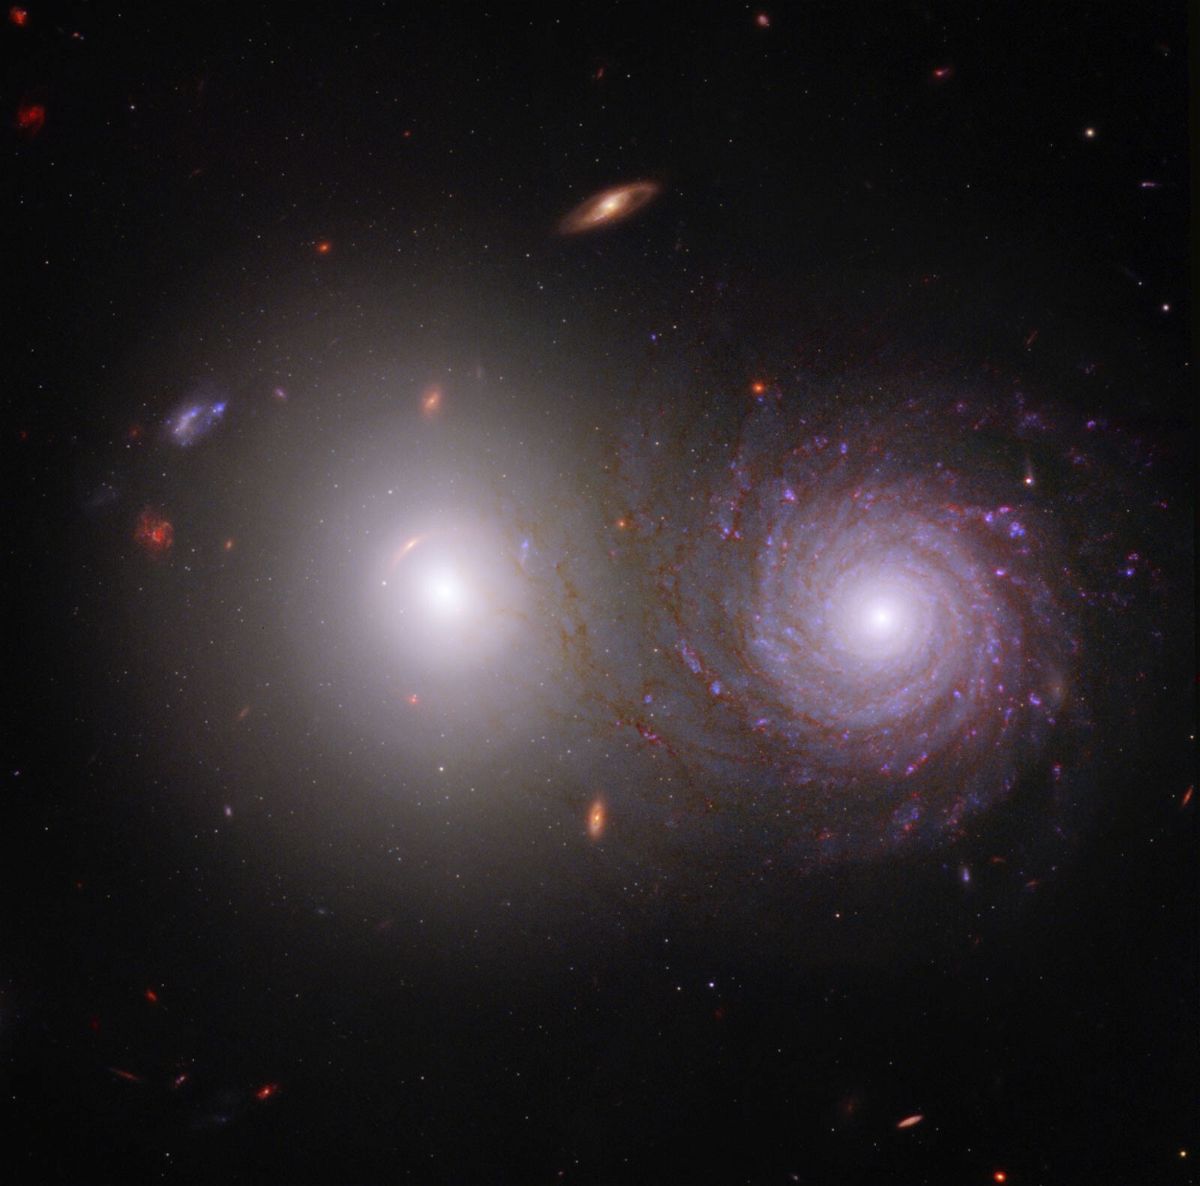 <i>NASA/ESA/CSA/ASU/UA/UM/JWST PEARLs Team</i><br/>A new image from the James Webb space Telescope showcasing a galactic pair